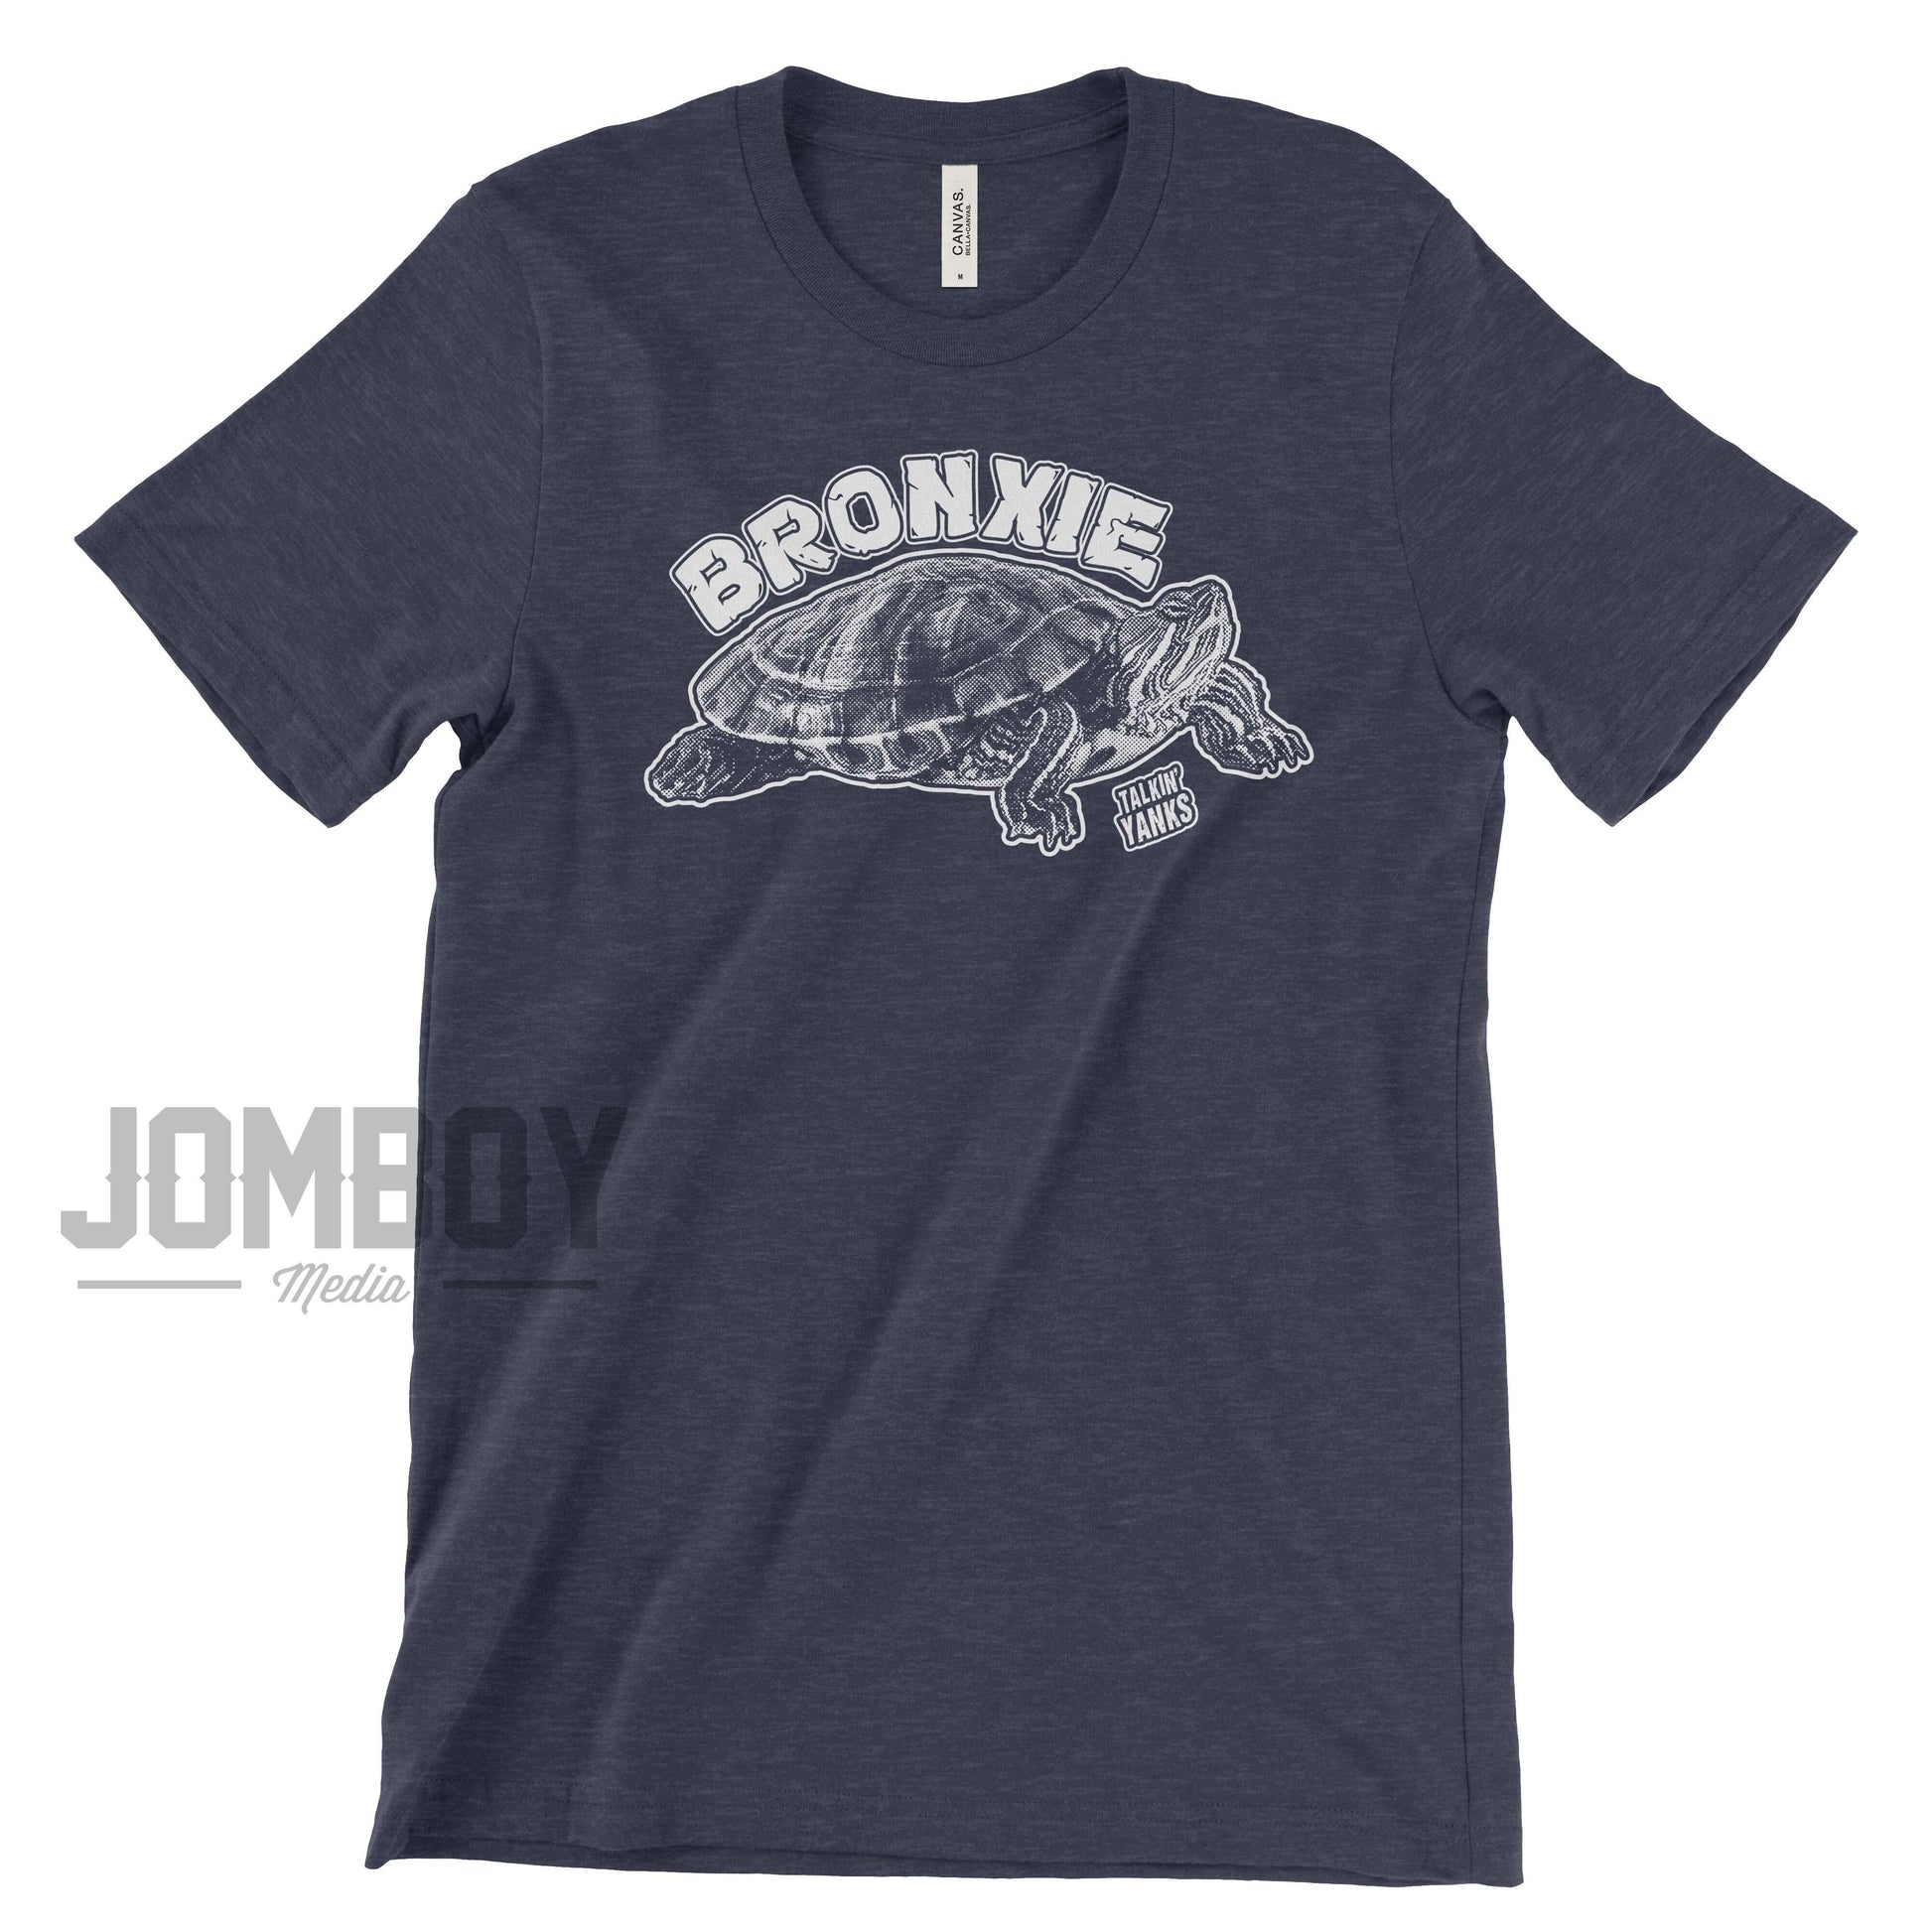 Bronxie | T-Shirt - Jomboy Media